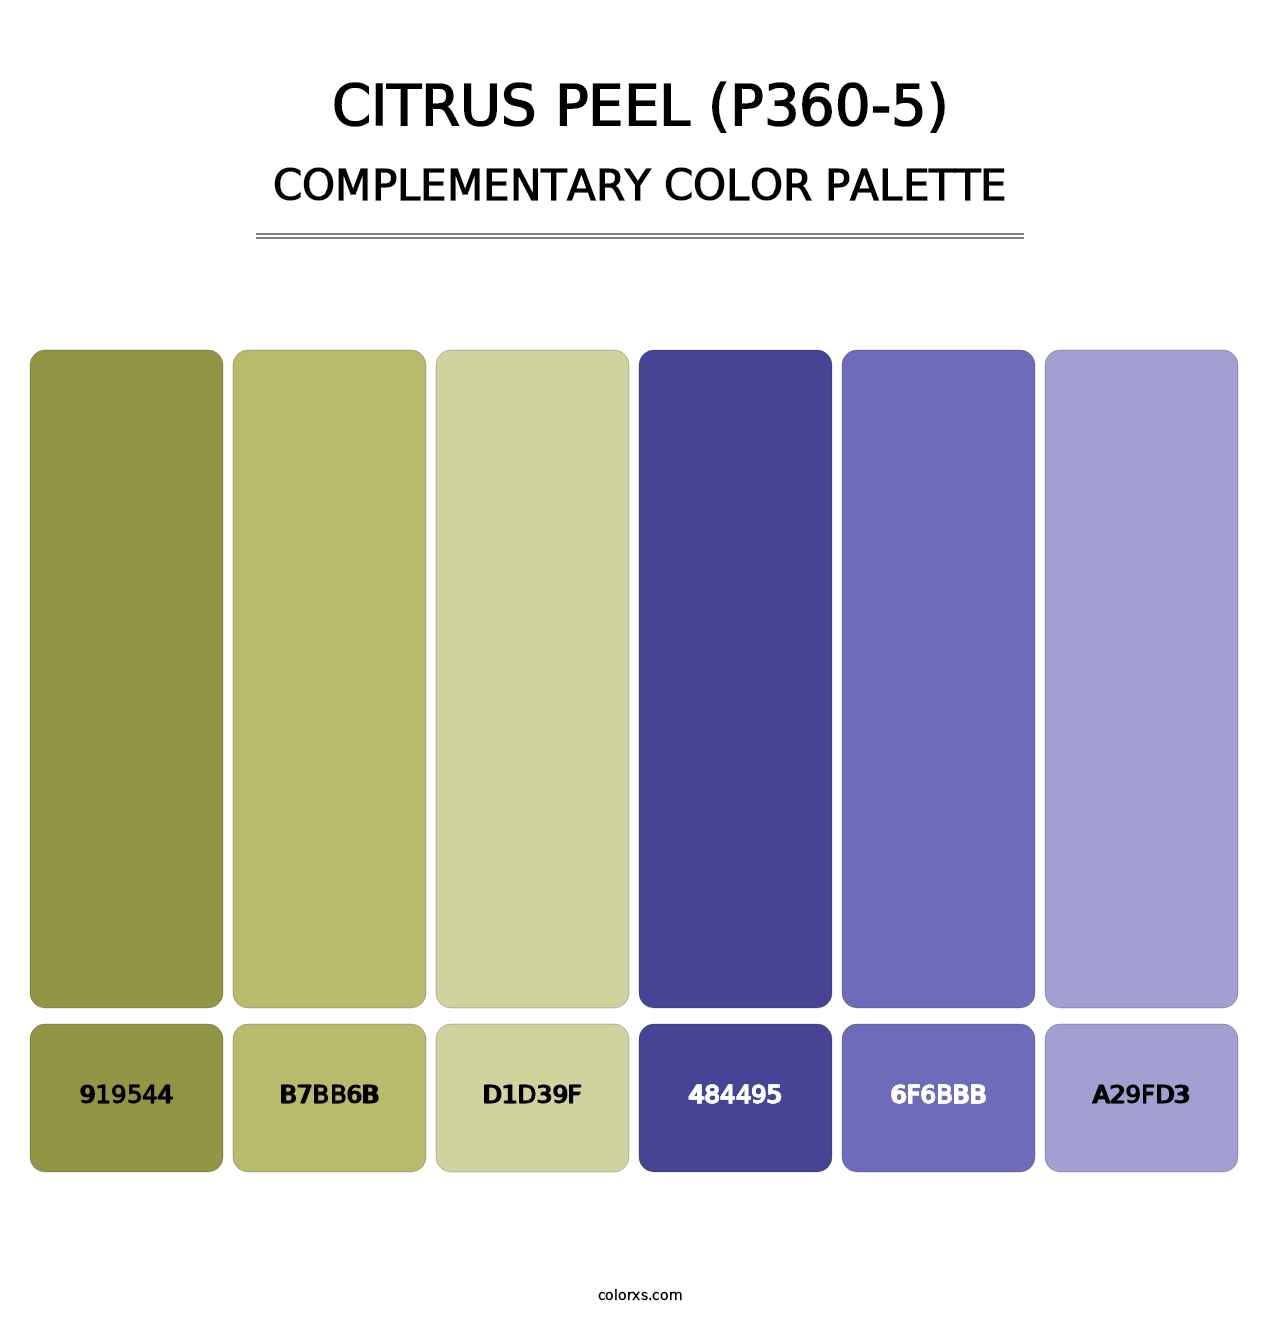 Citrus Peel (P360-5) - Complementary Color Palette